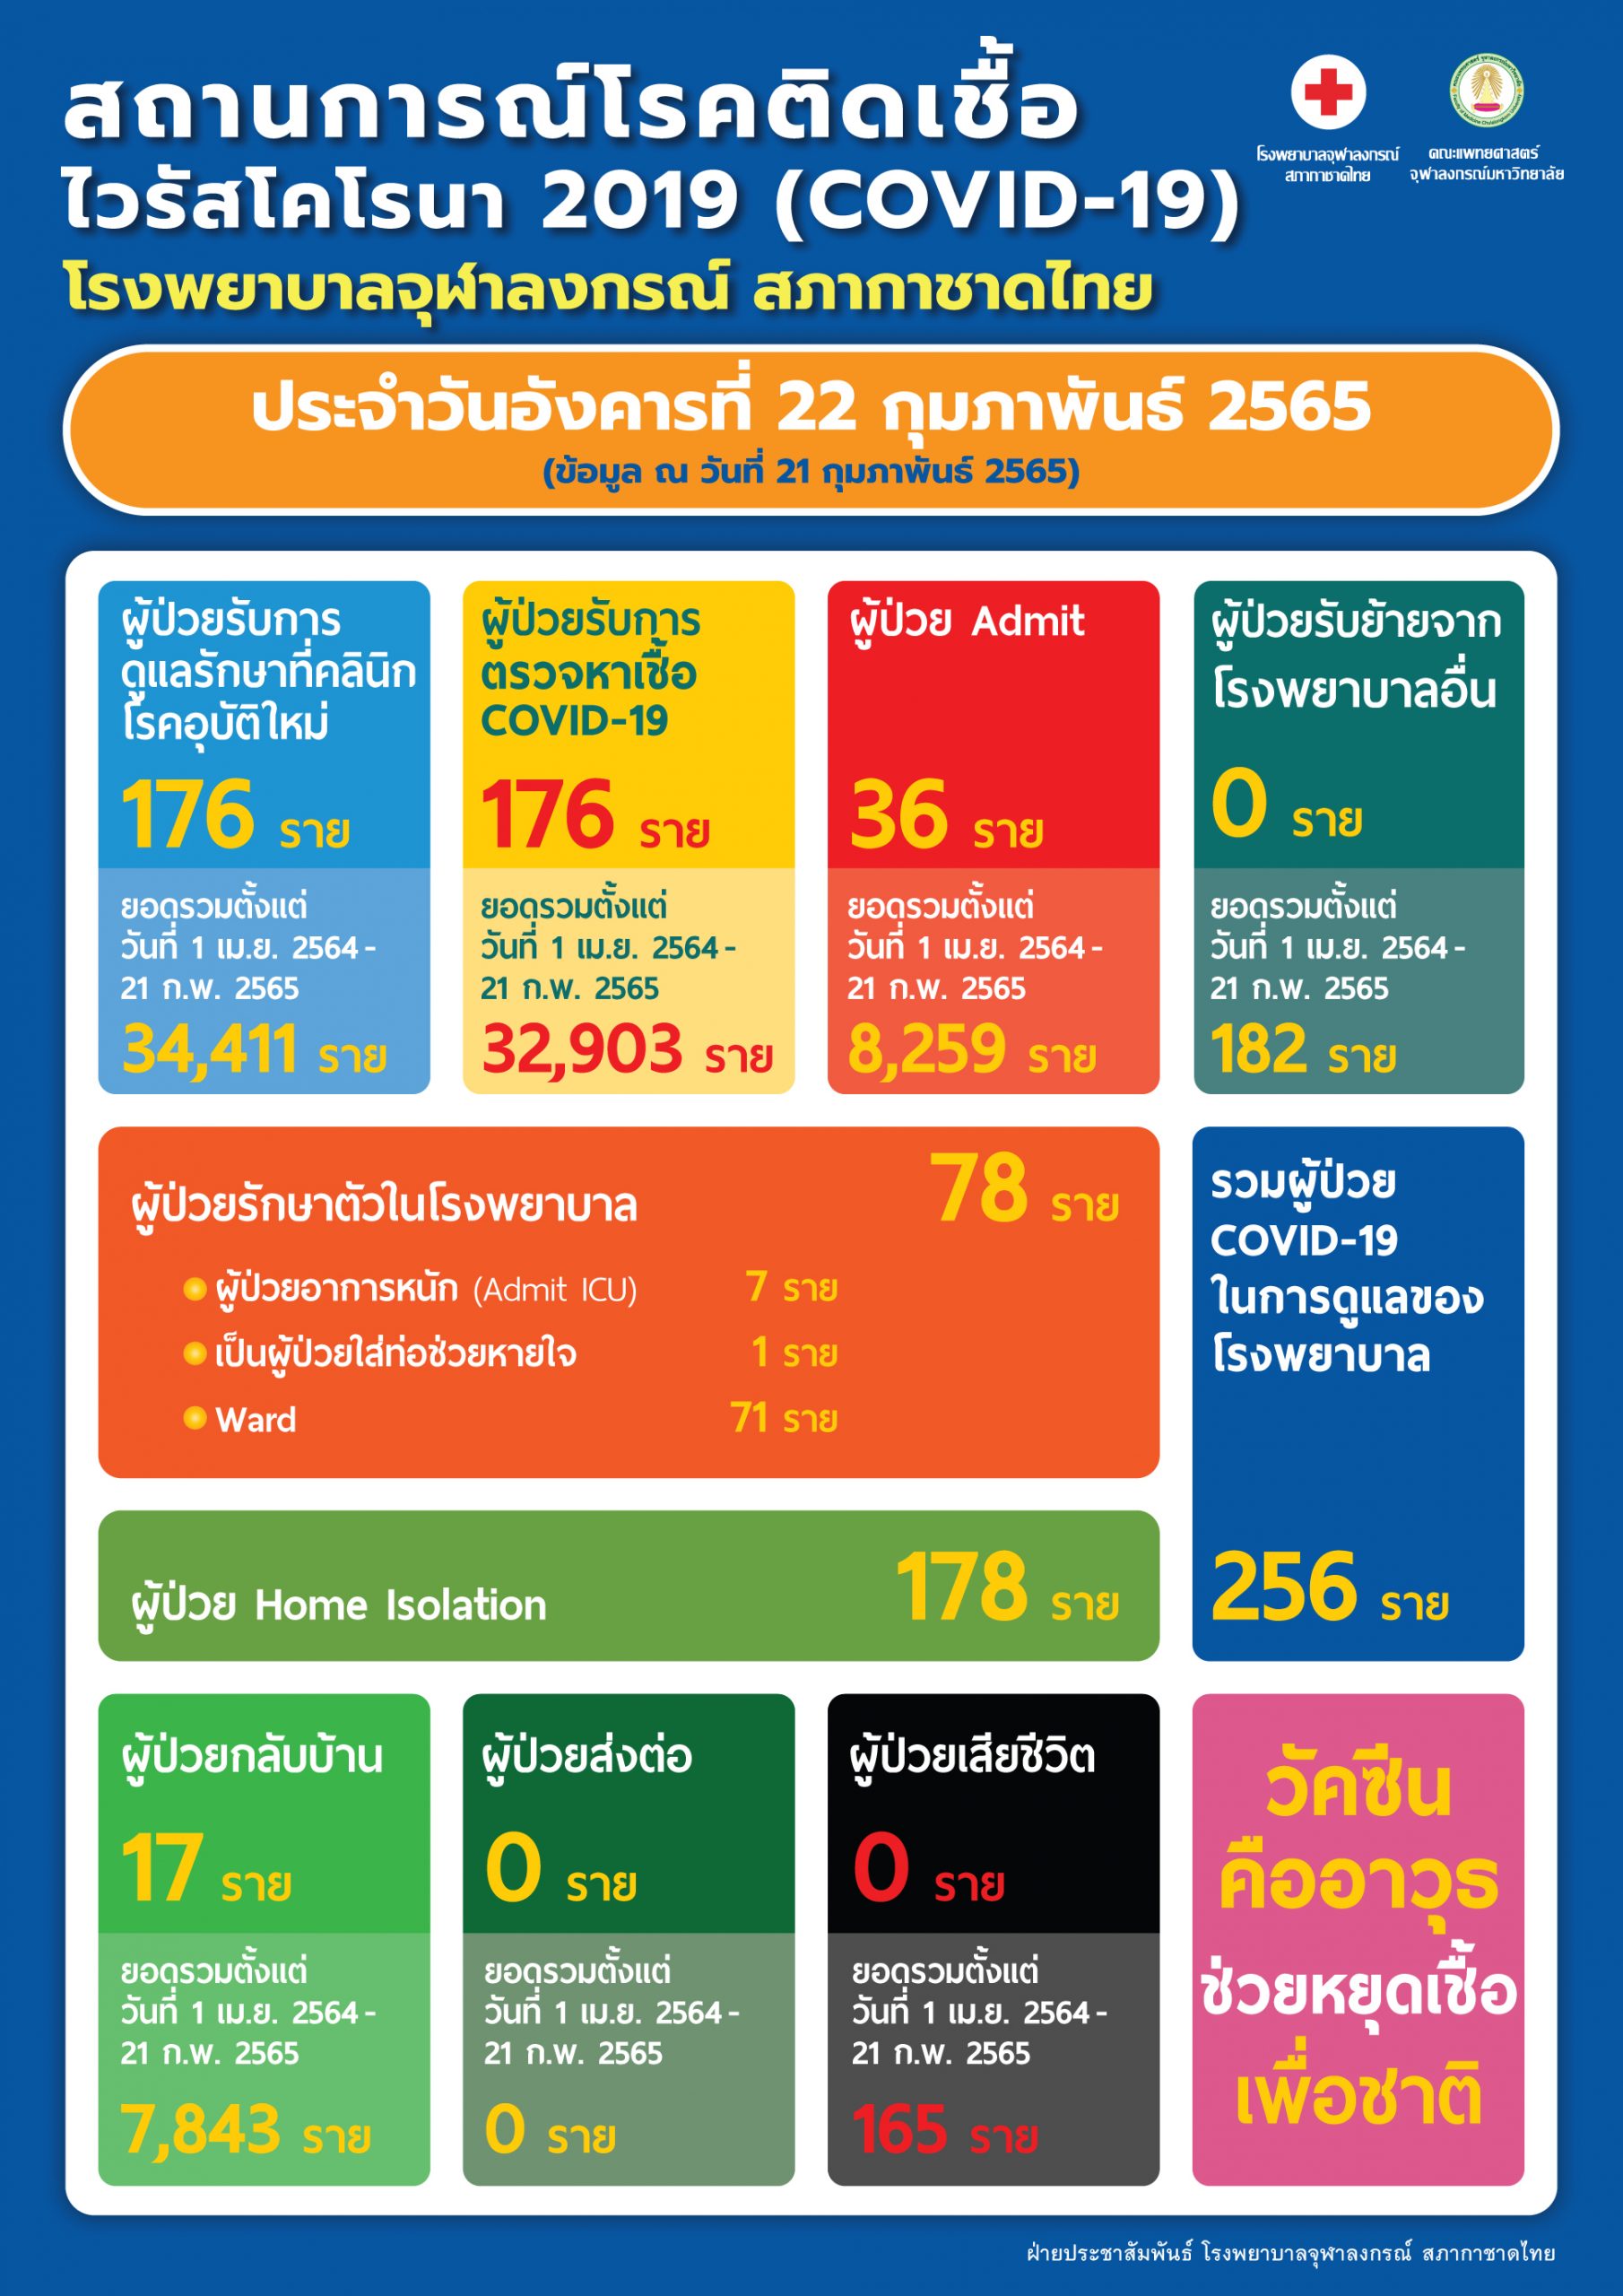 สถานการณ์โรคติดเชื้อไวรัสโคโรนา 2019 (COVID-19) โรงพยาบาลจุฬาลงกรณ์ สภากาชาดไทย ประจำวันอังคารที่ 22 กุมภาพันธ์ 2565